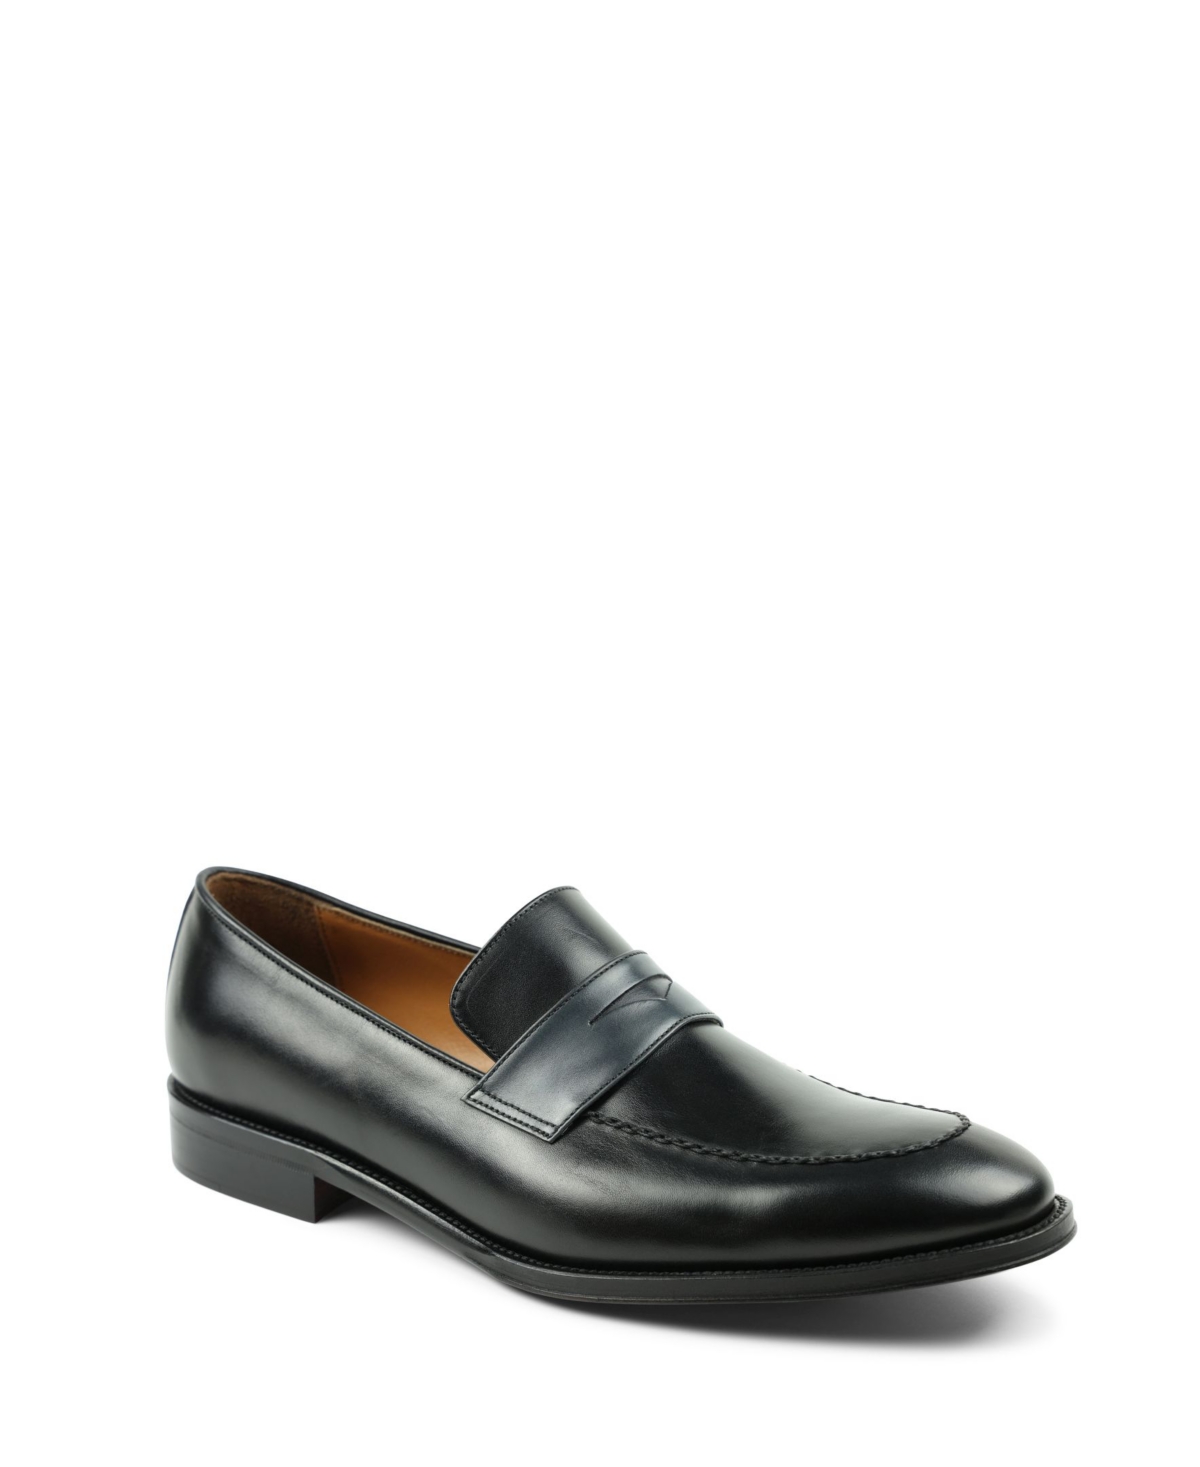 Bruno Magli Men's Arezzo Slip On Loafers Men's Shoes In Black/grey ...